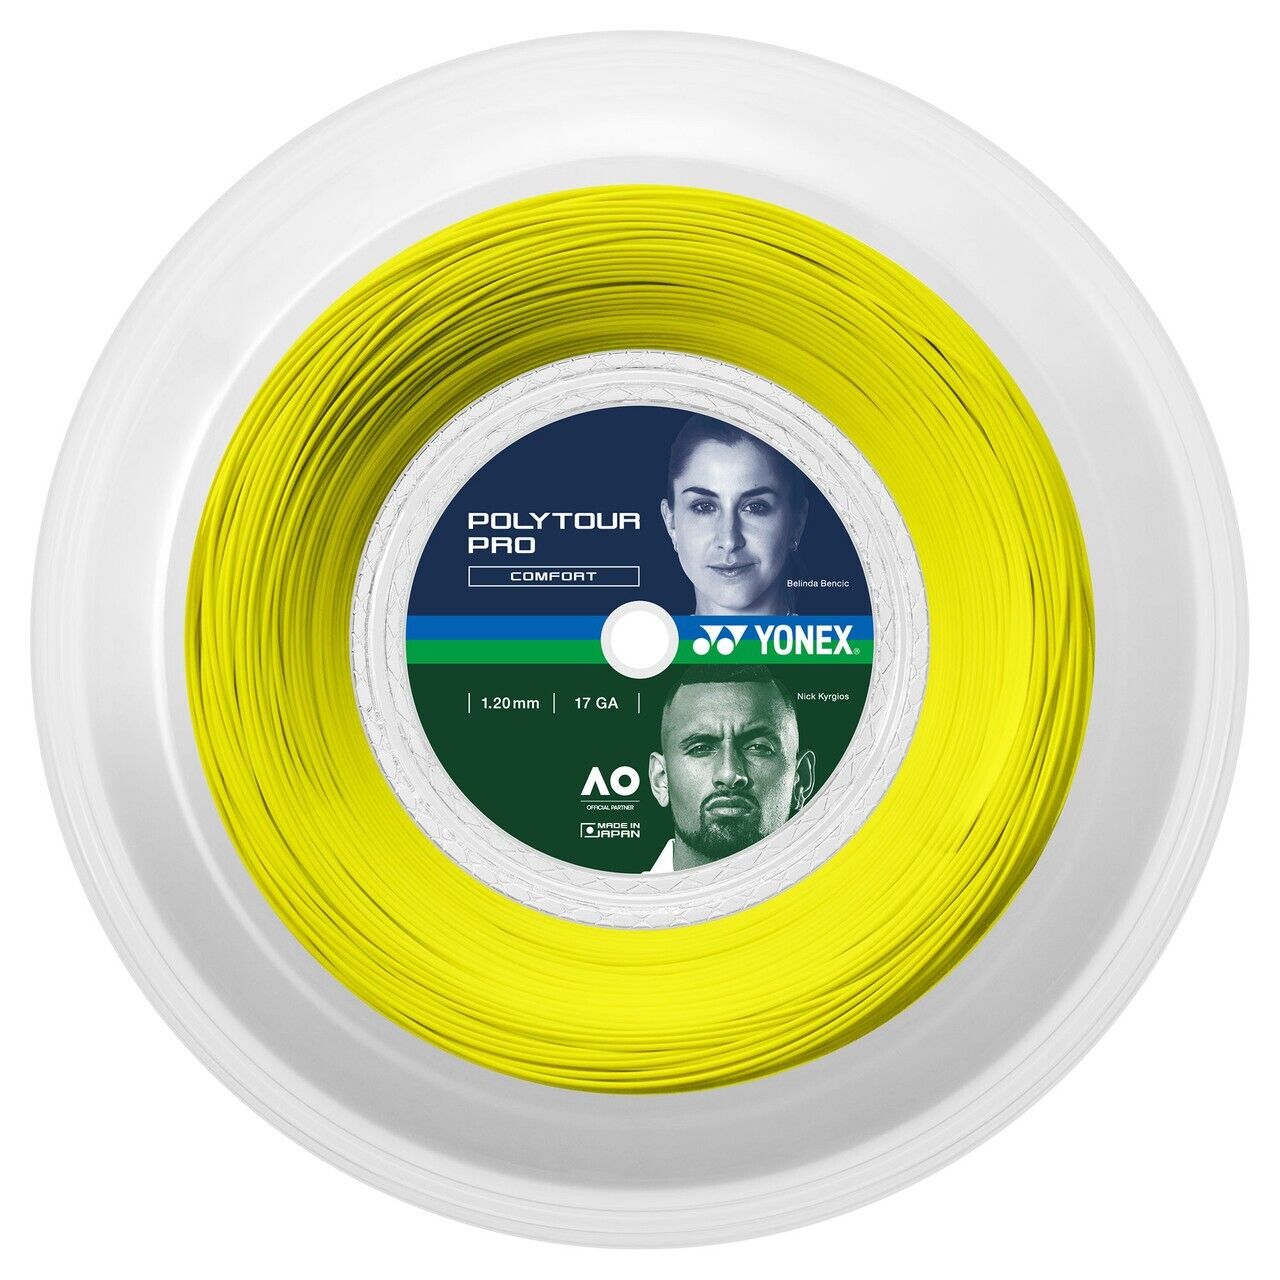 Yonex POLYTOUR PRO (yellow) 1.20mm 17G Tennis String - 656ft 200m Reel